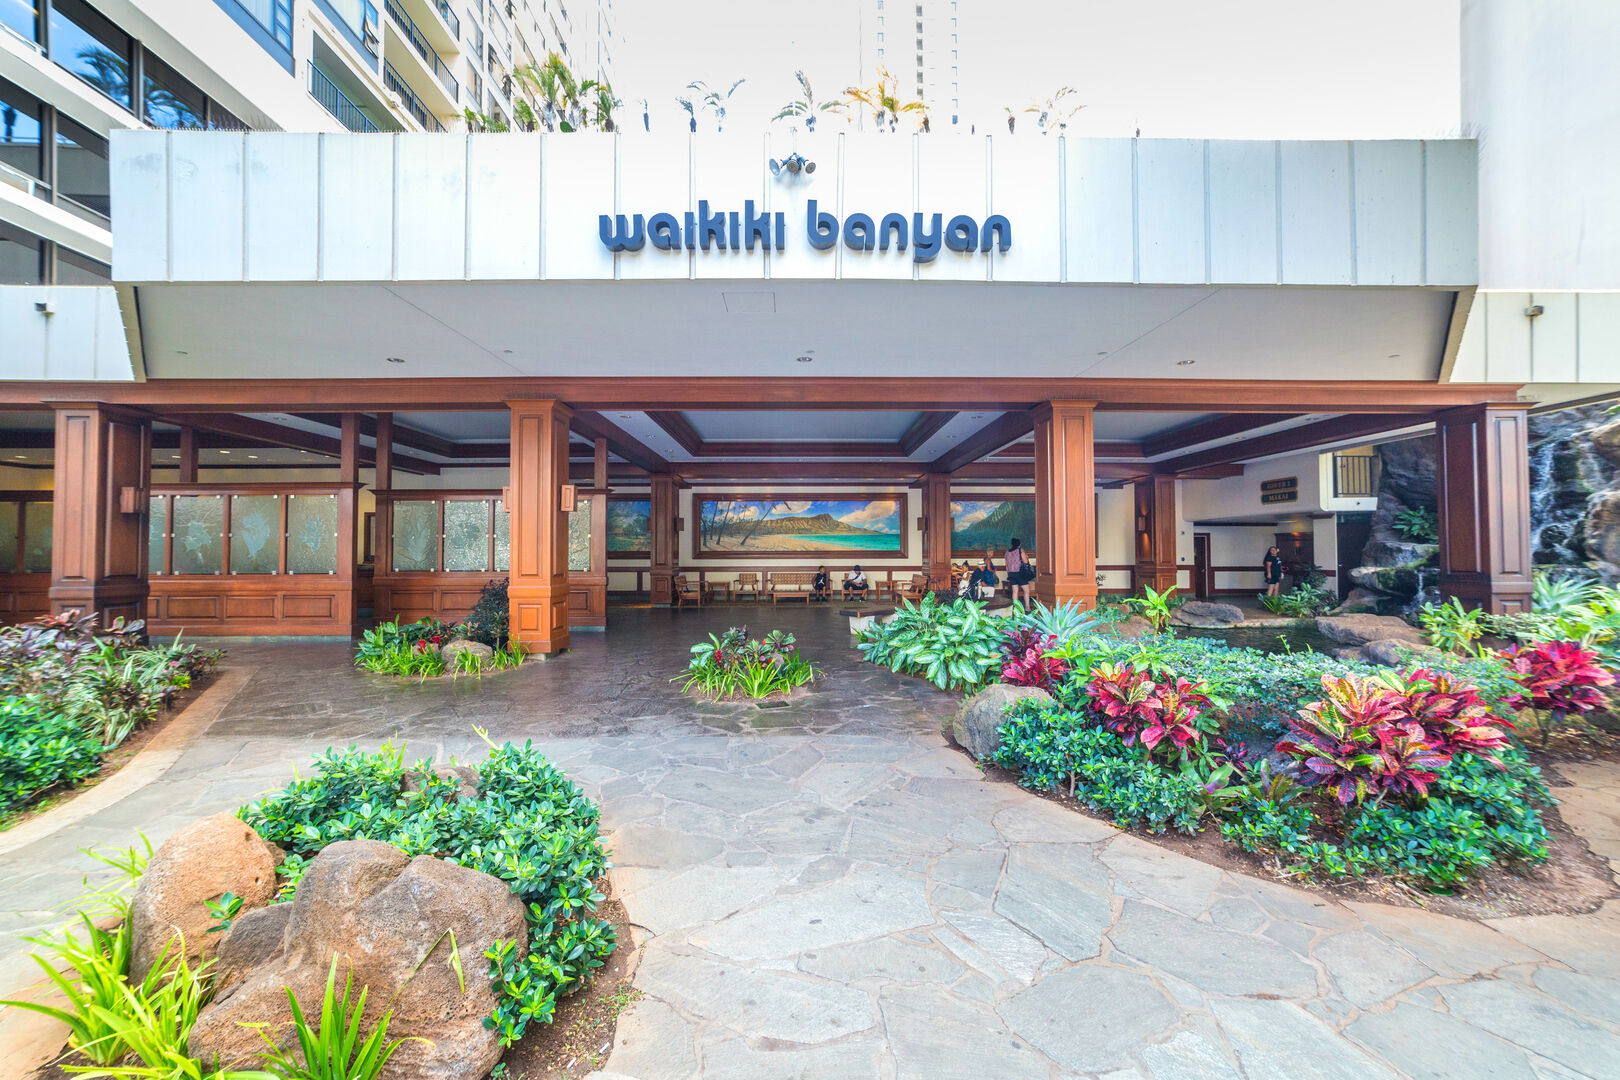 The Waikiki Banyan front entrance